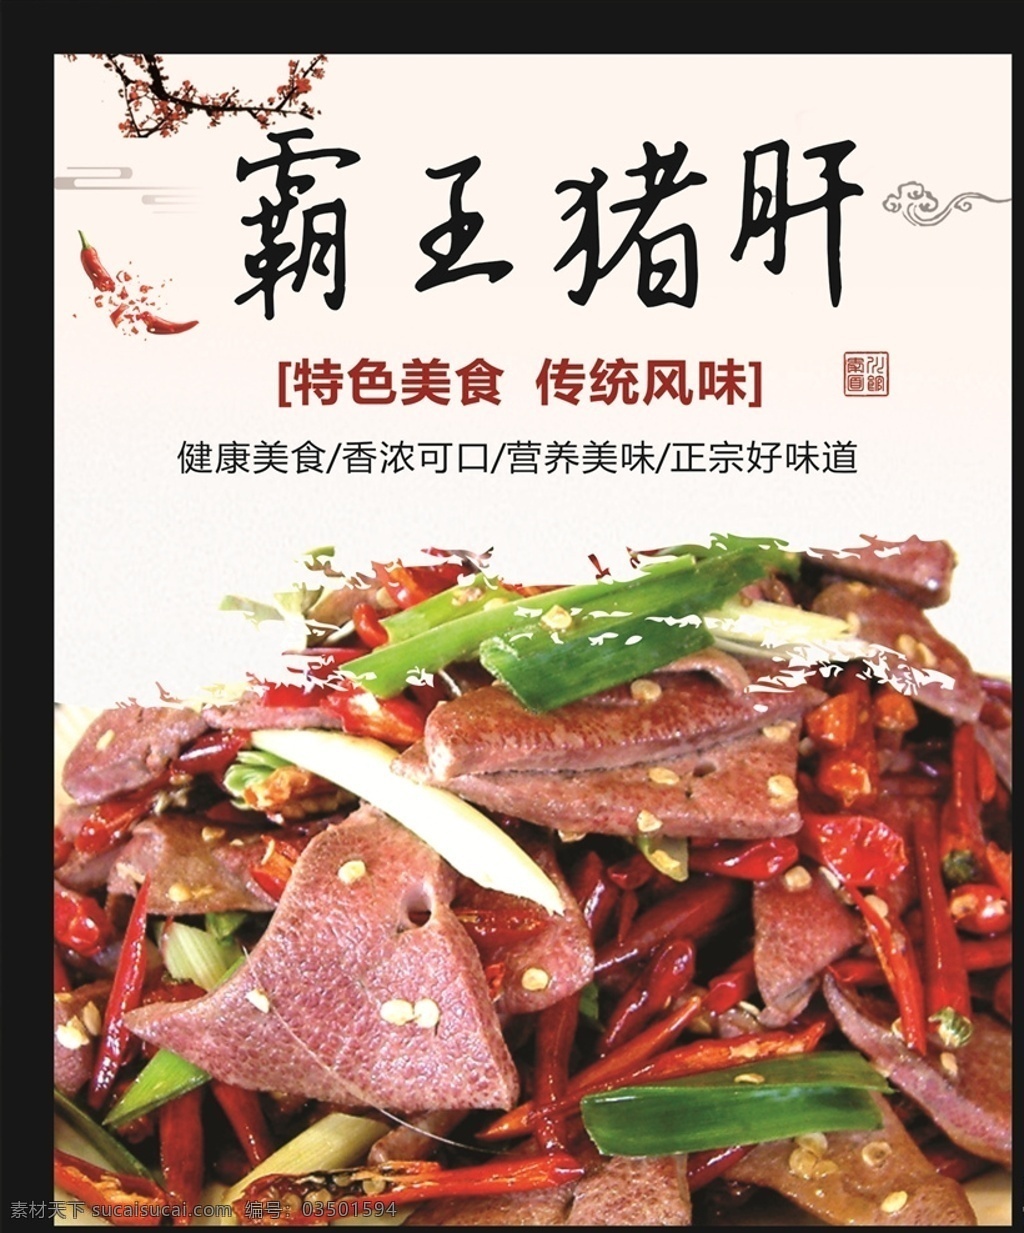 霸王猪肝 美食 中餐 冷盘 拼盘 猪肝 凉菜 菜单菜谱